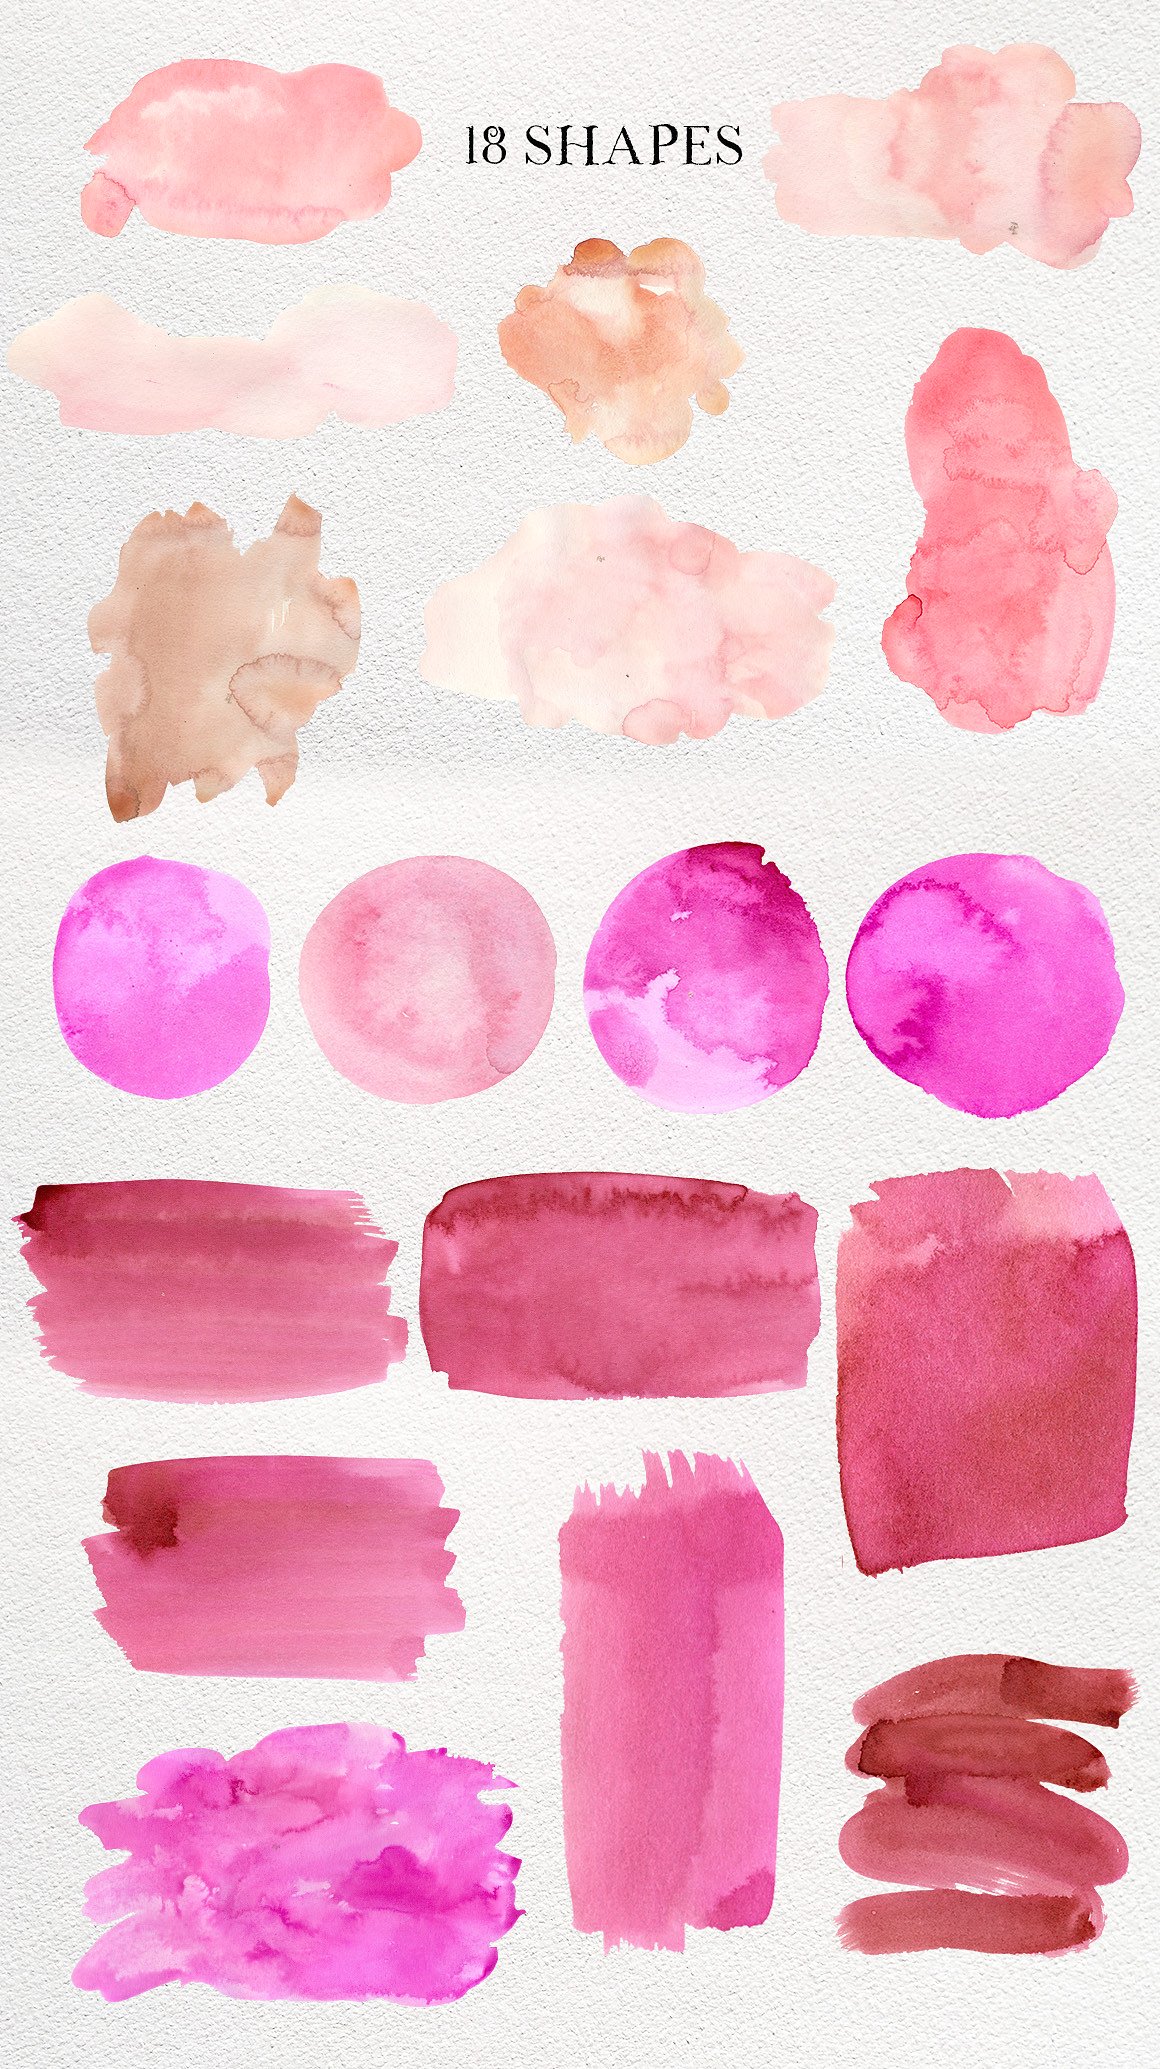 粉红水彩渲染背景纹理素材 Pink Ink Watercol